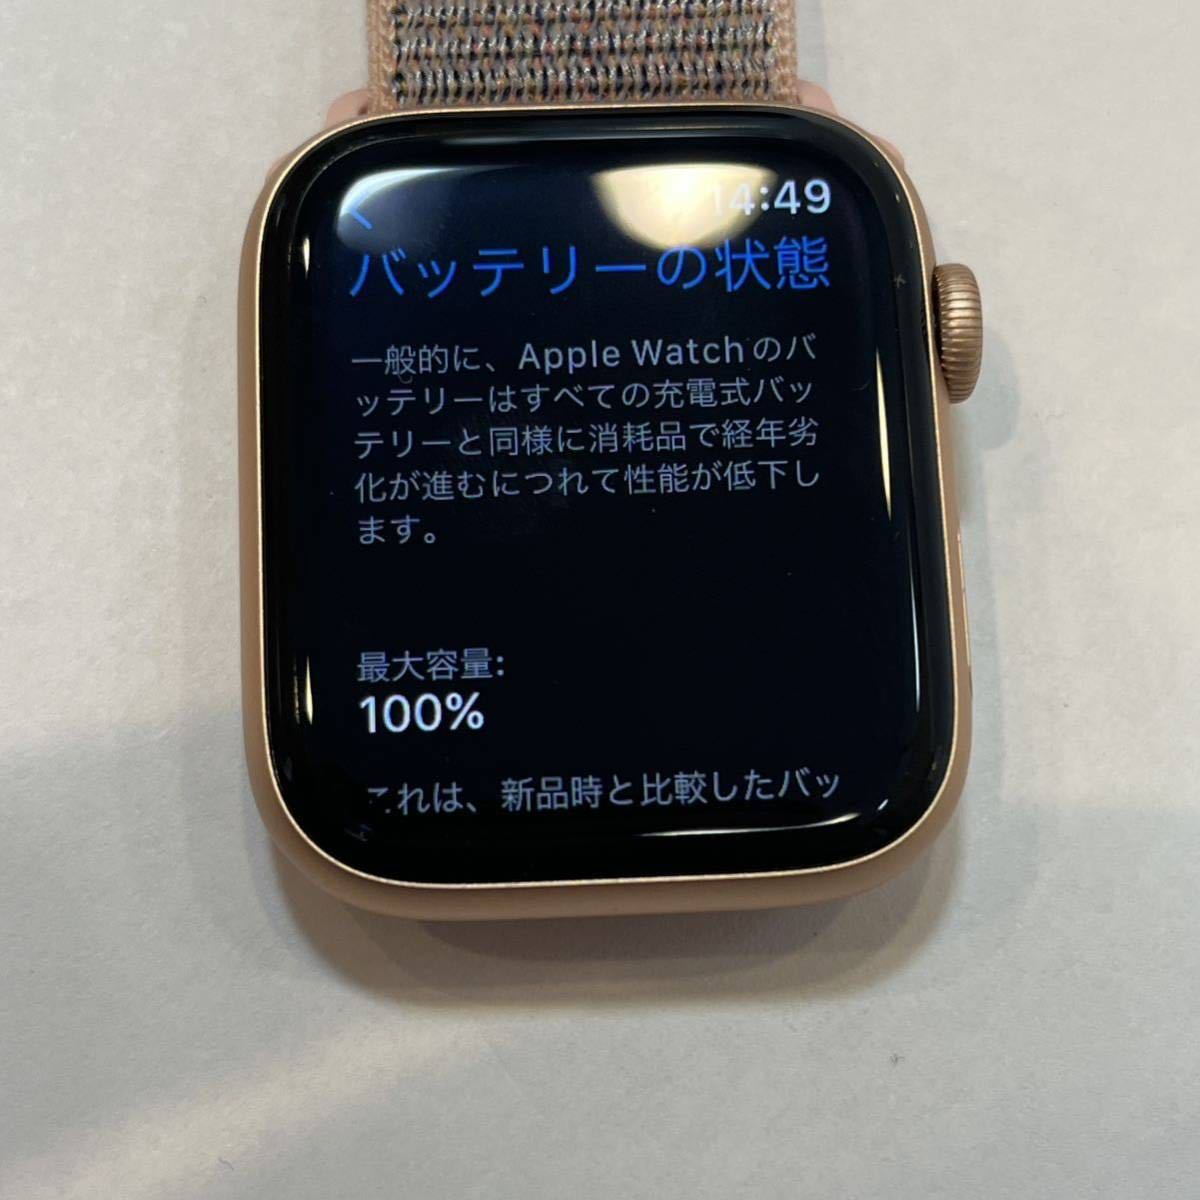 [. сделка ]*Apple Watch Series 4 44mm MTVX2J/A* Apple часы | корпус | Gold |16GB| аккумулятор самый большая вместимость 100%|A2008|EA0